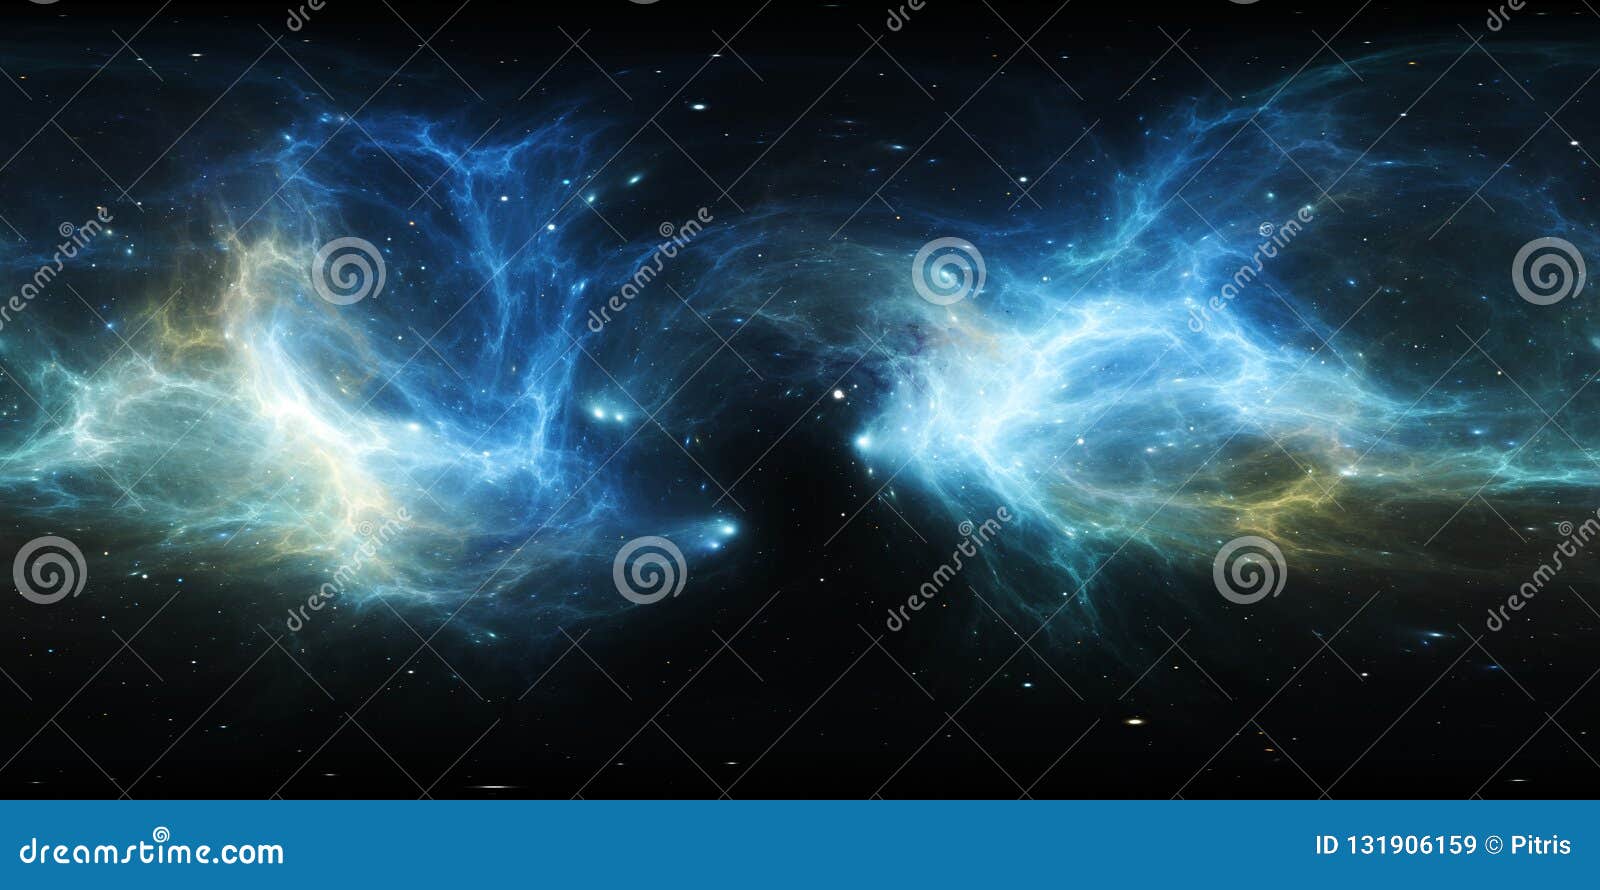 360 Degree Space Nebula Panorama, Equirectangular